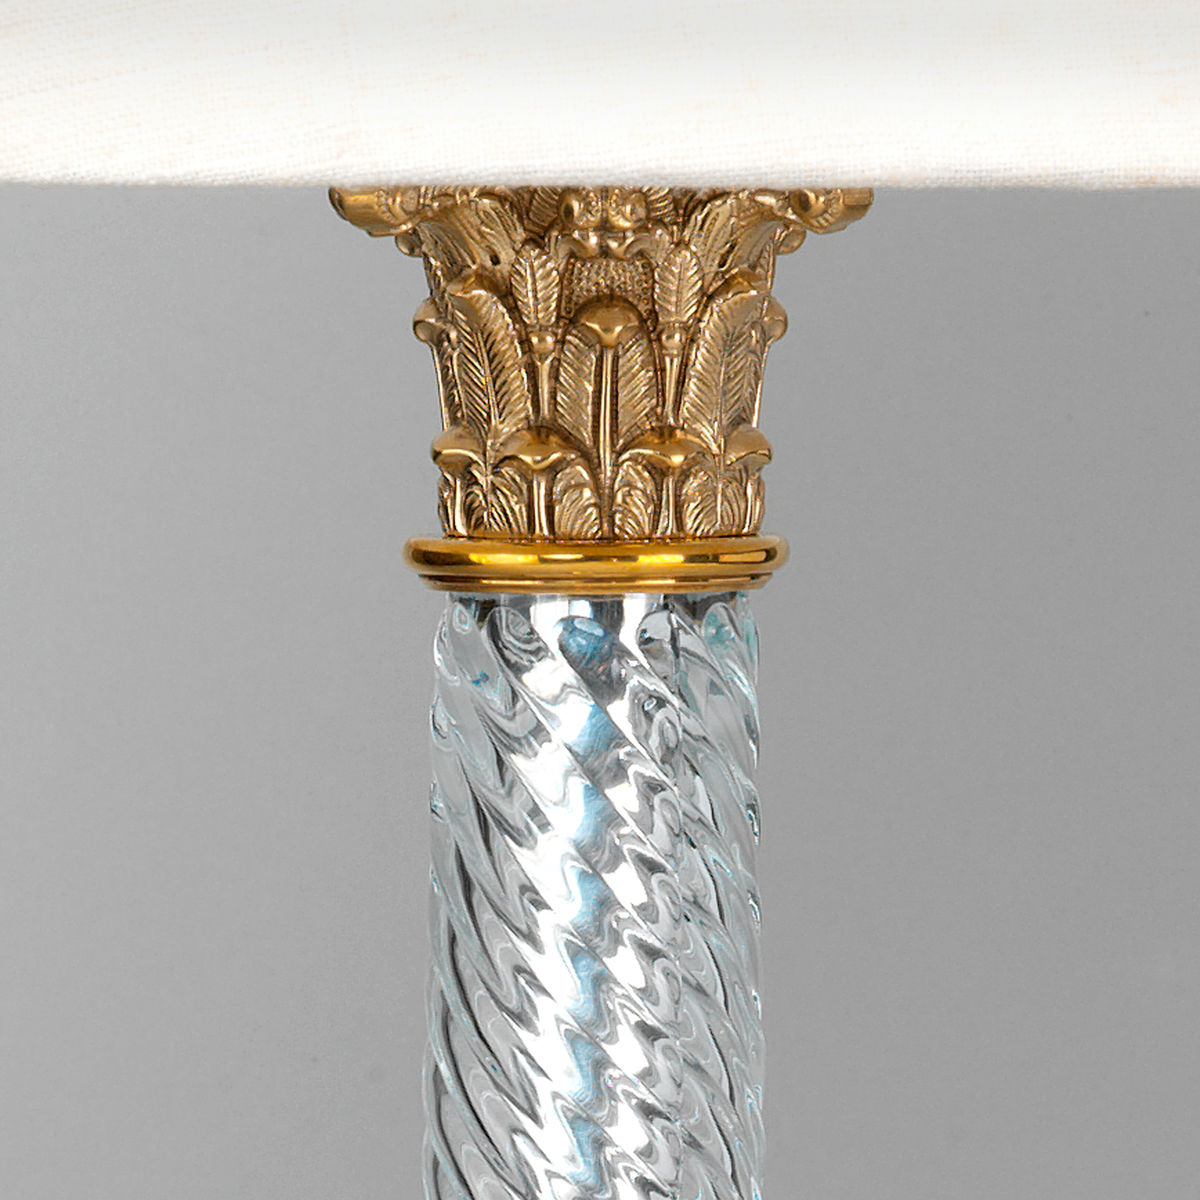 Glass and brass column light detail